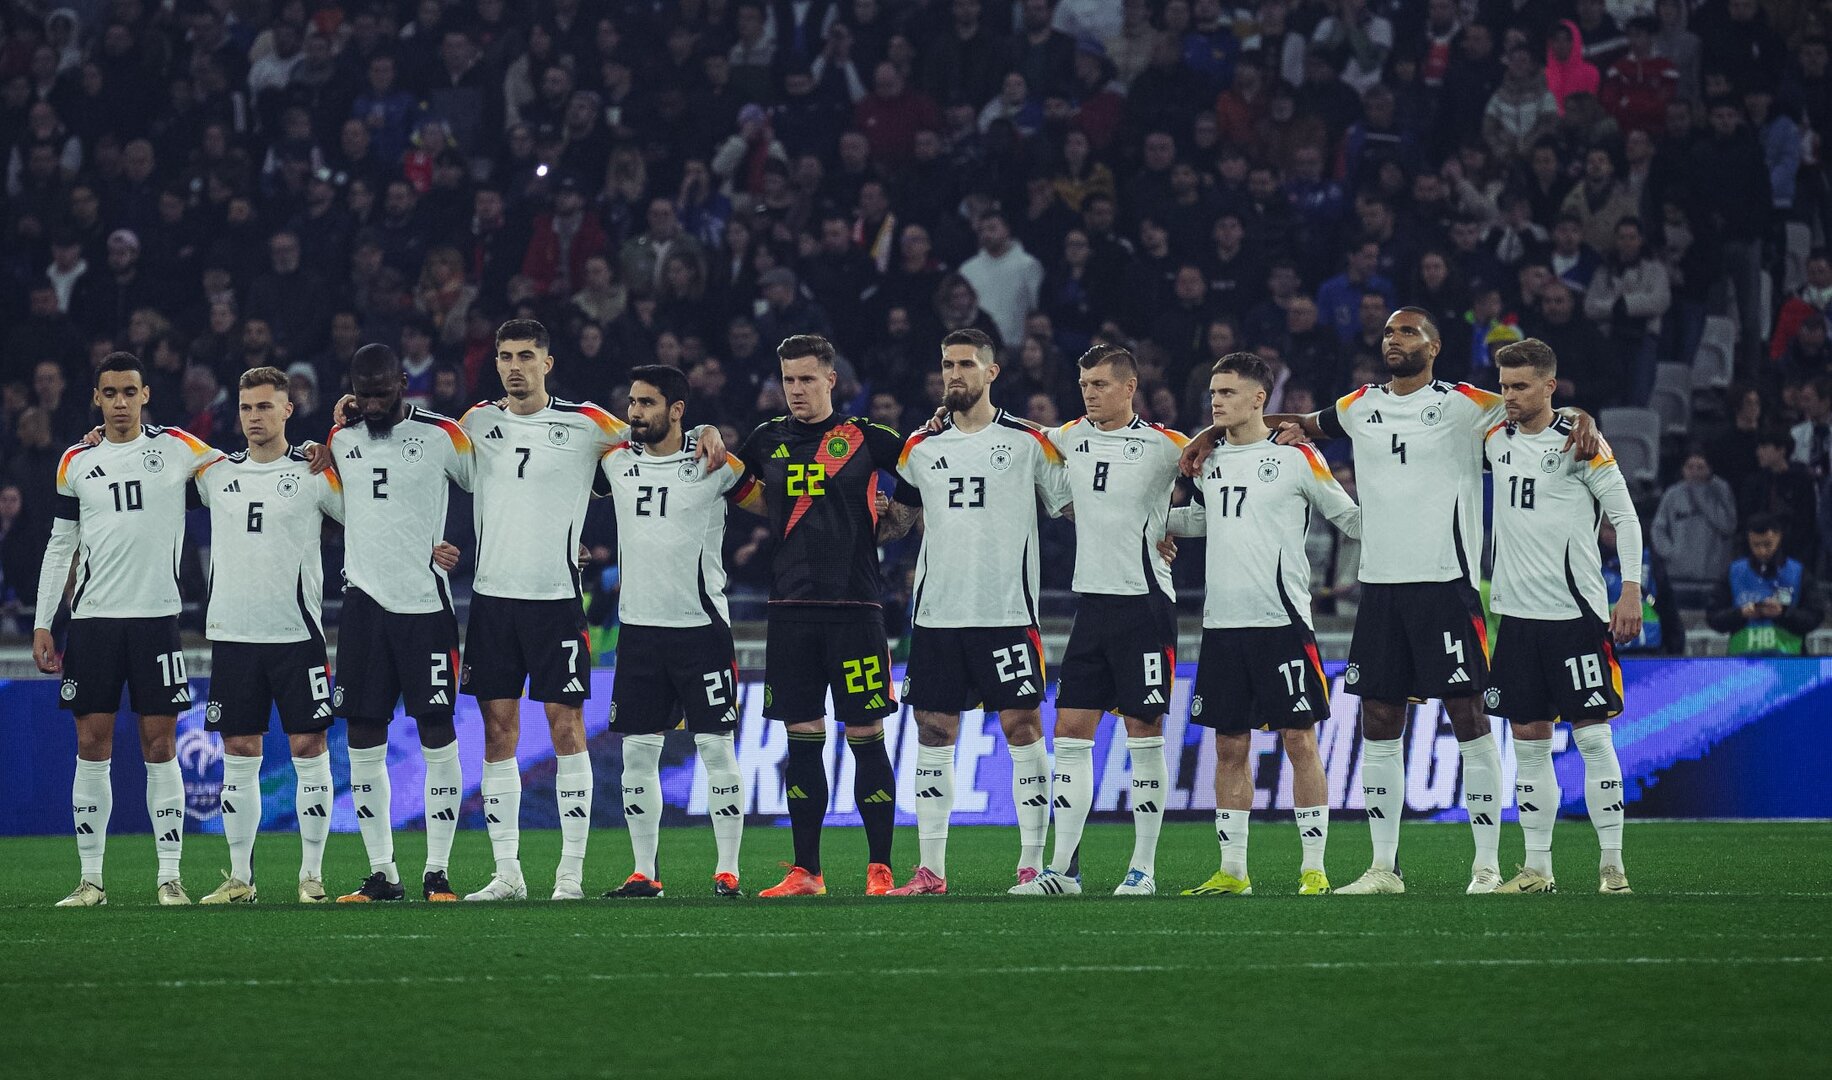 TikTok ist offizieller „Entertainment-Partner“ der deutschen Fußballnationalmannschaft geworden